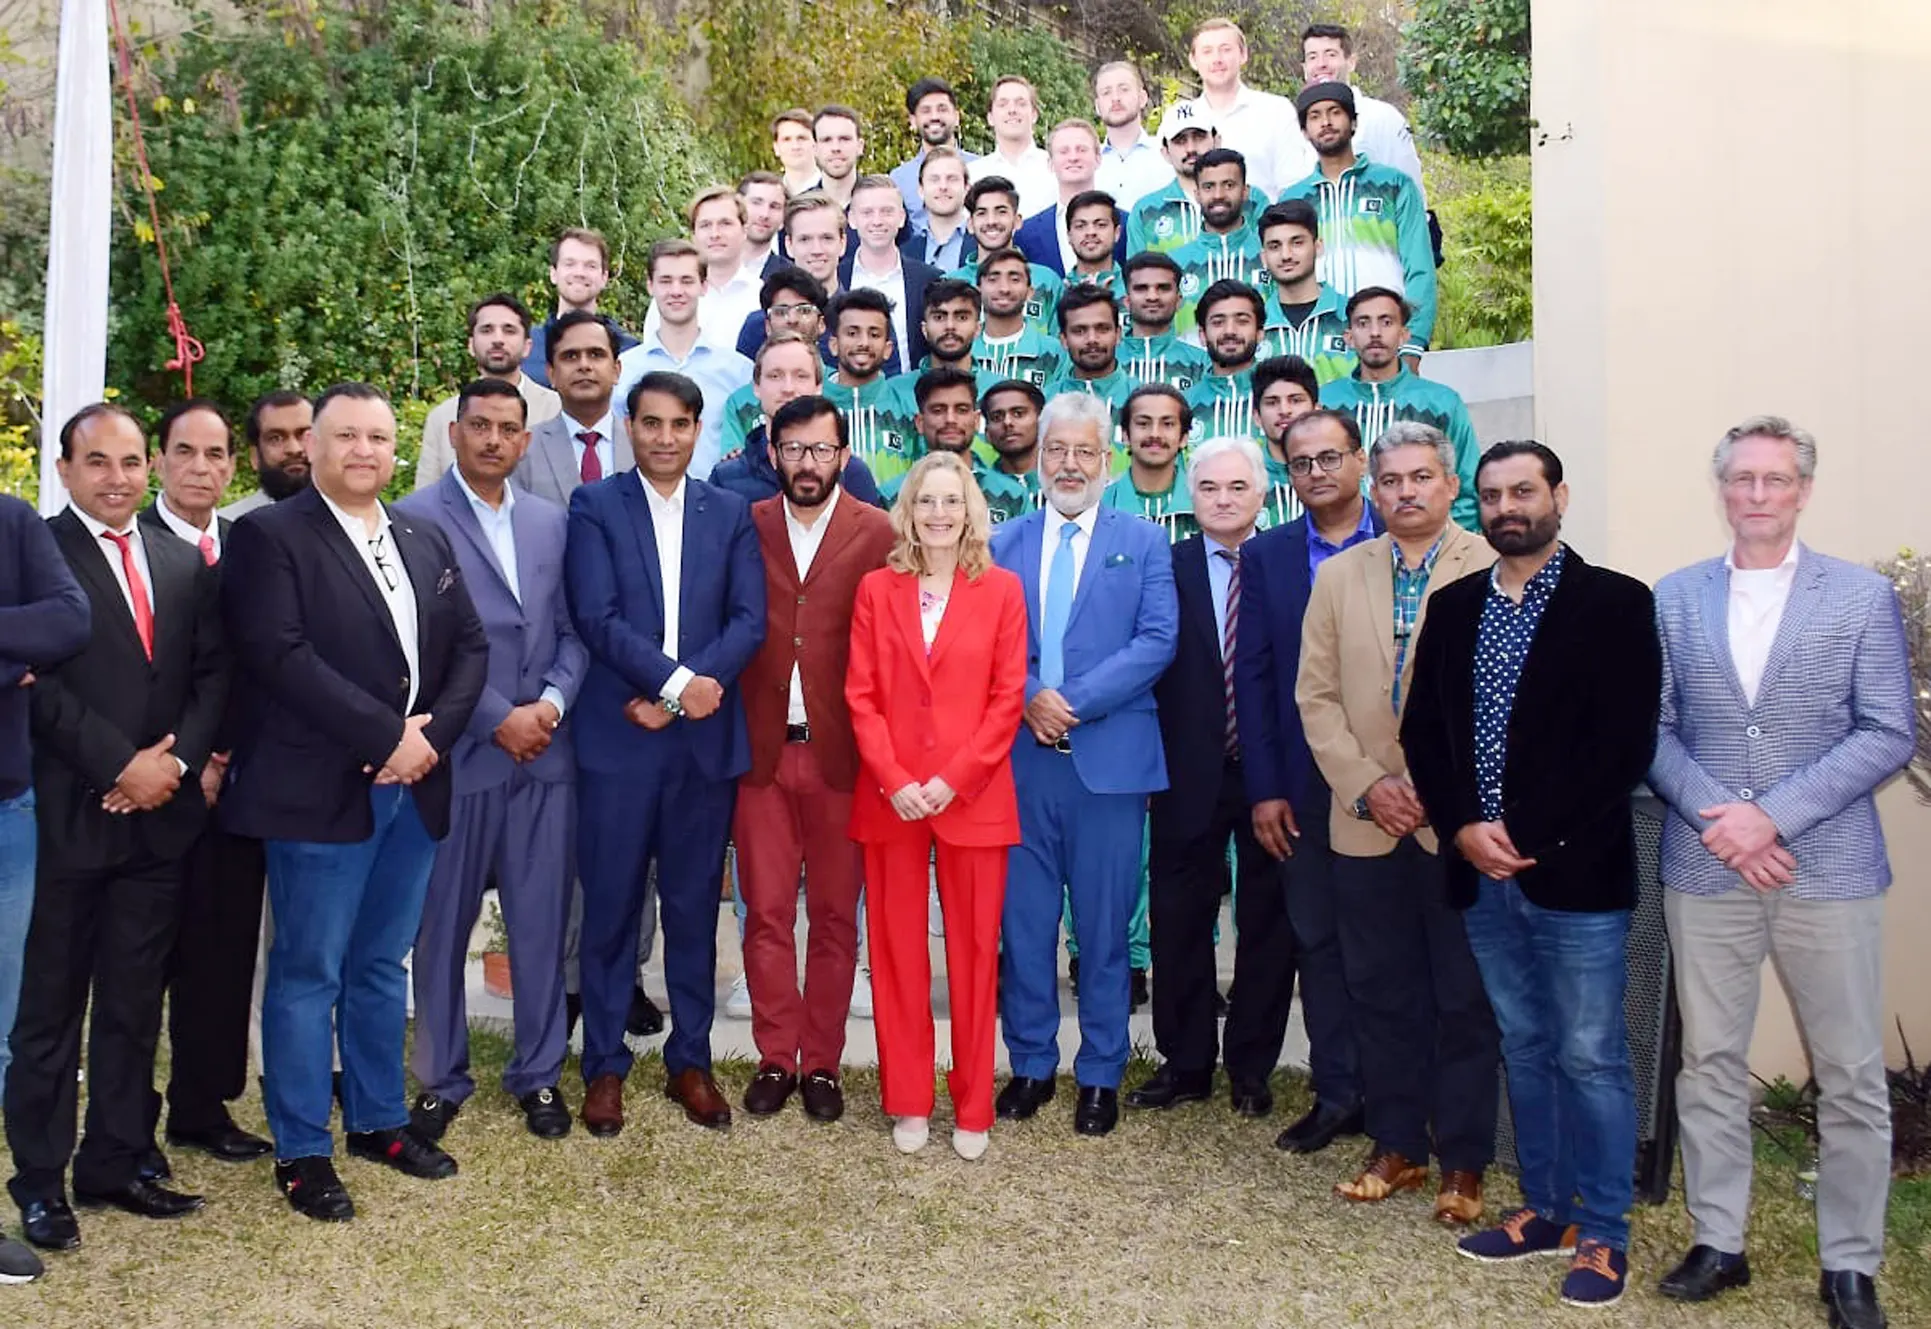 De Ambassadeur van Nederland houdt een receptie voor de Nederlandse en Pakistaanse hockeyteams in het kader van sportdiplomatie